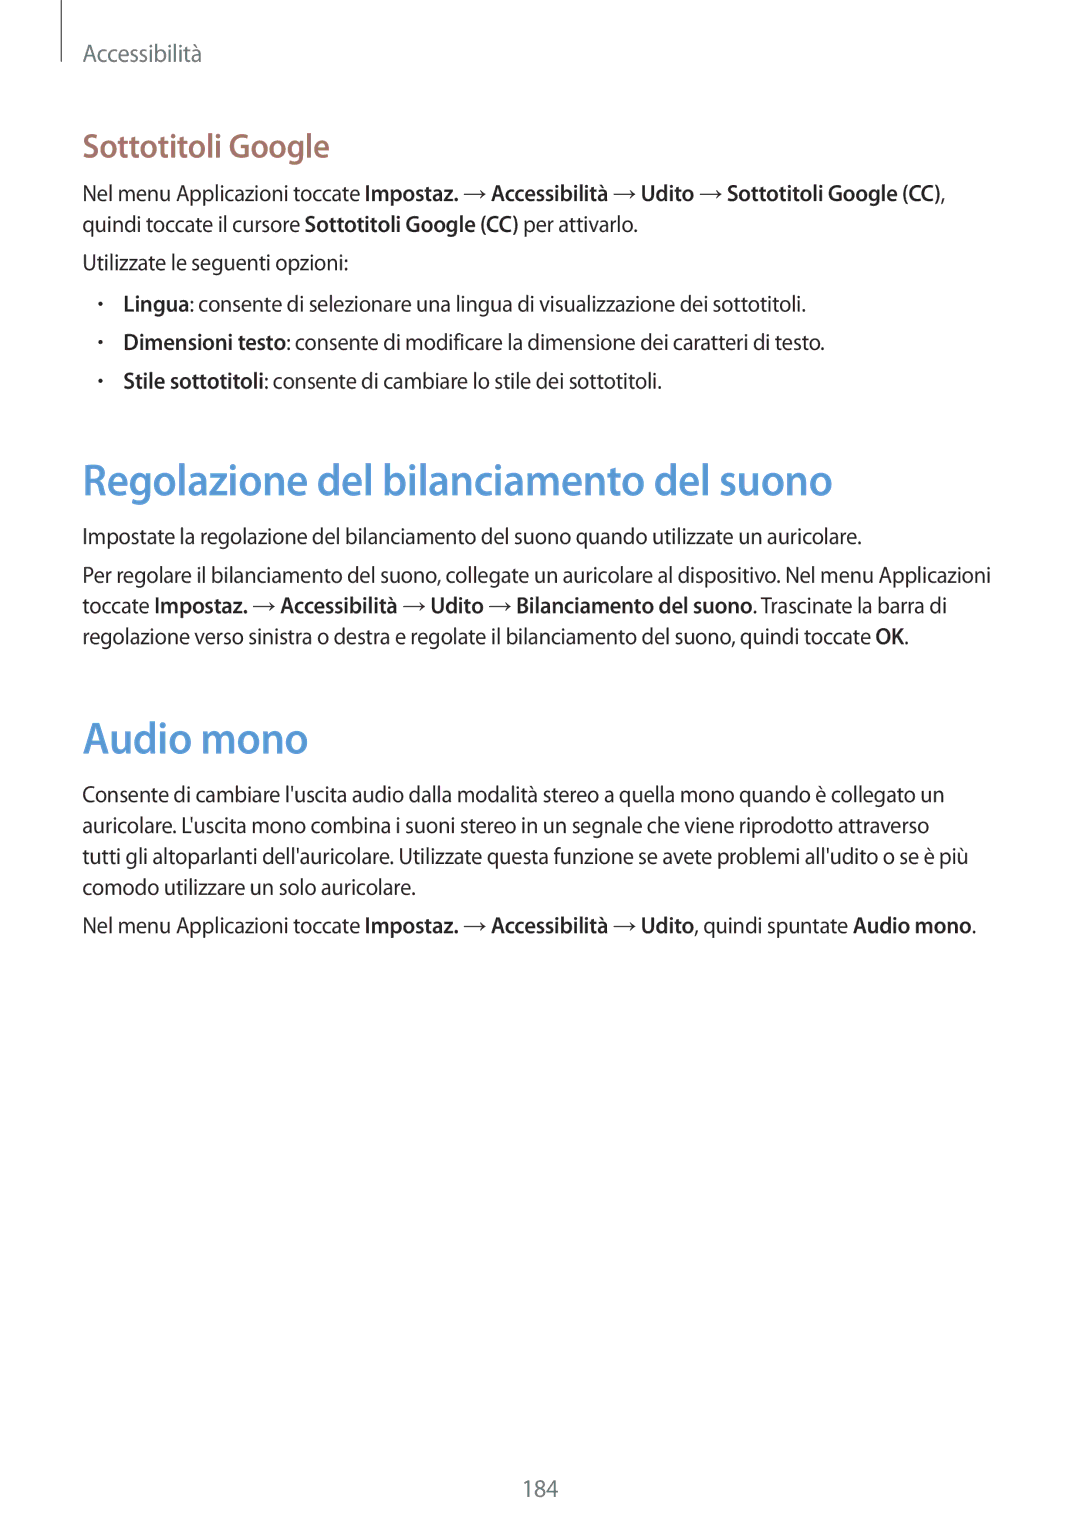 Samsung SM-G800FZBAAUT, SM-G800FZWADBT manual Regolazione del bilanciamento del suono, Audio mono, Sottotitoli Google 